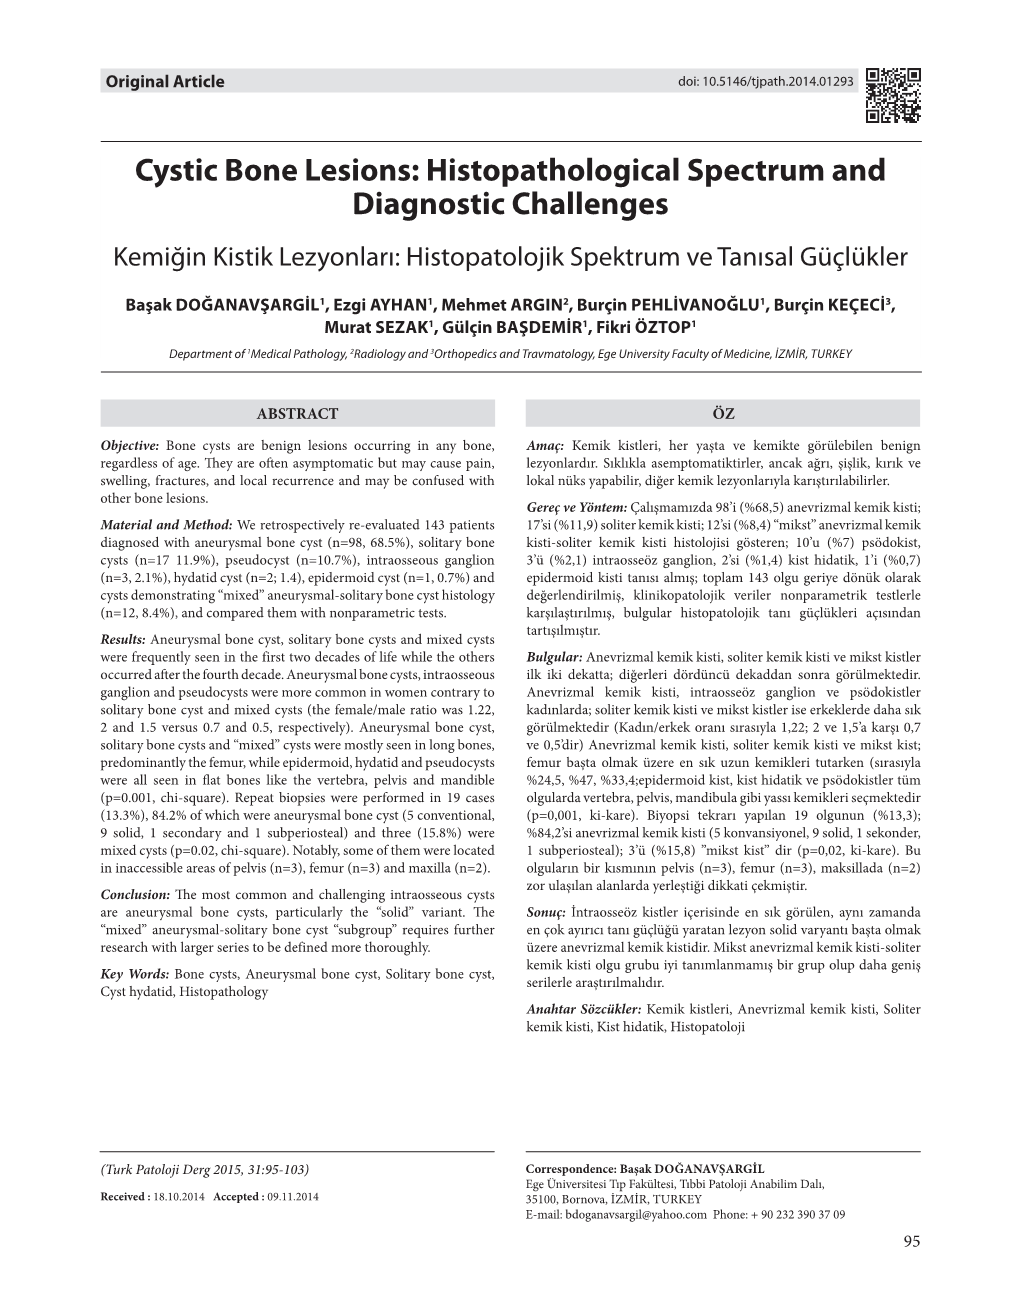 Cystic Bone Lesions: Histopathological Spectrum and Diagnostic Challenges Kemiğin Kistik Lezyonları: Histopatolojik Spektrum Ve Tanısal Güçlükler